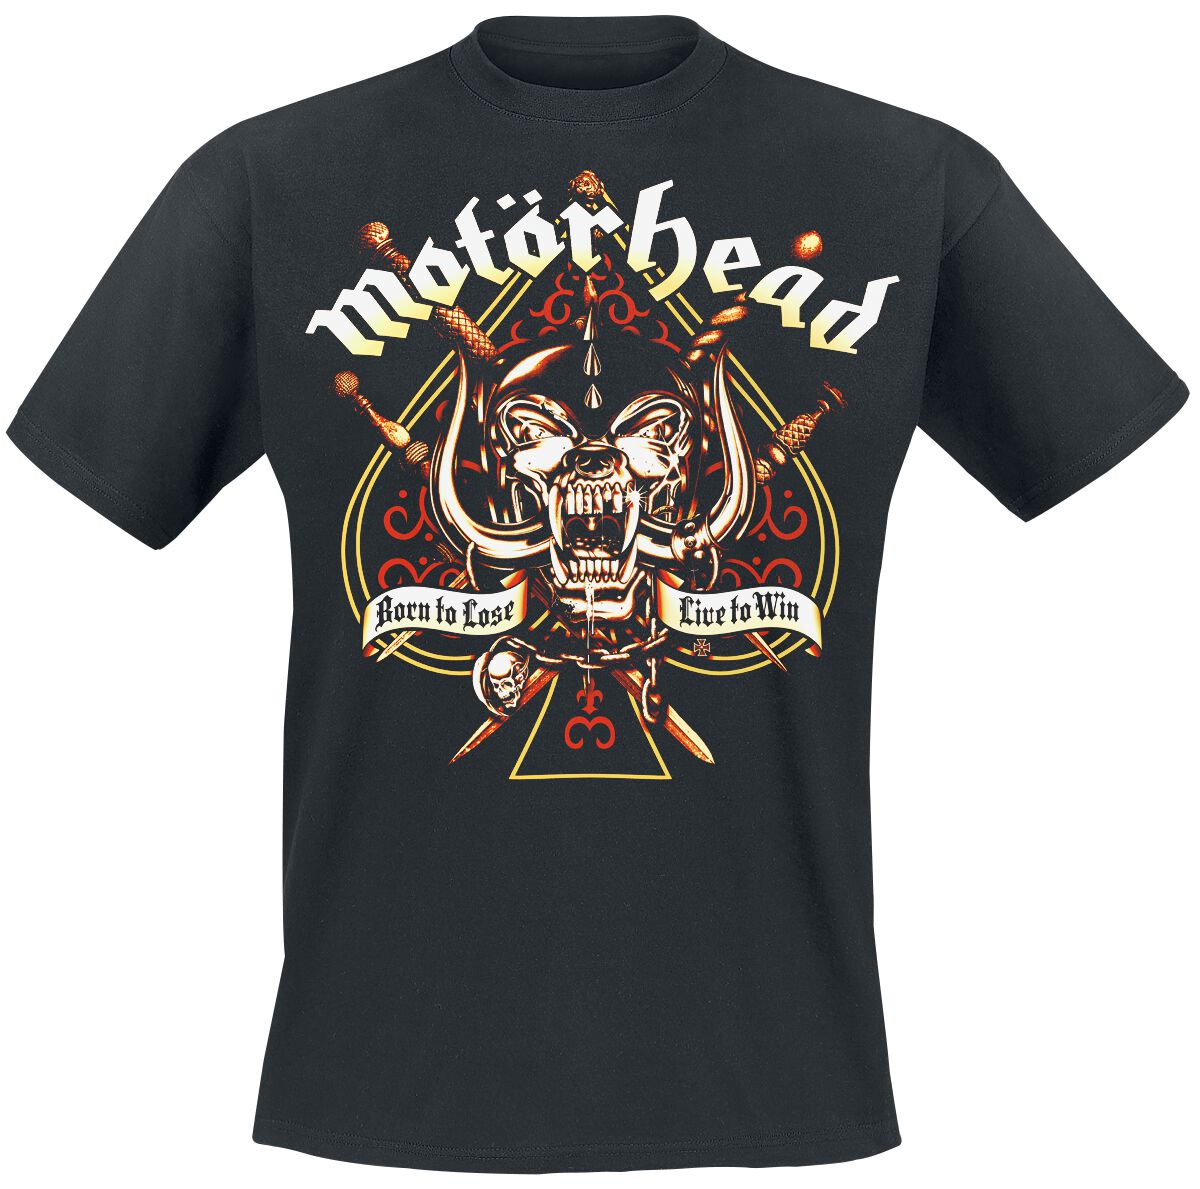 Motörhead T-Shirt - Sword Spade - L bis 4XL - für Männer - Größe L - schwarz  - Lizenziertes Merchandise!